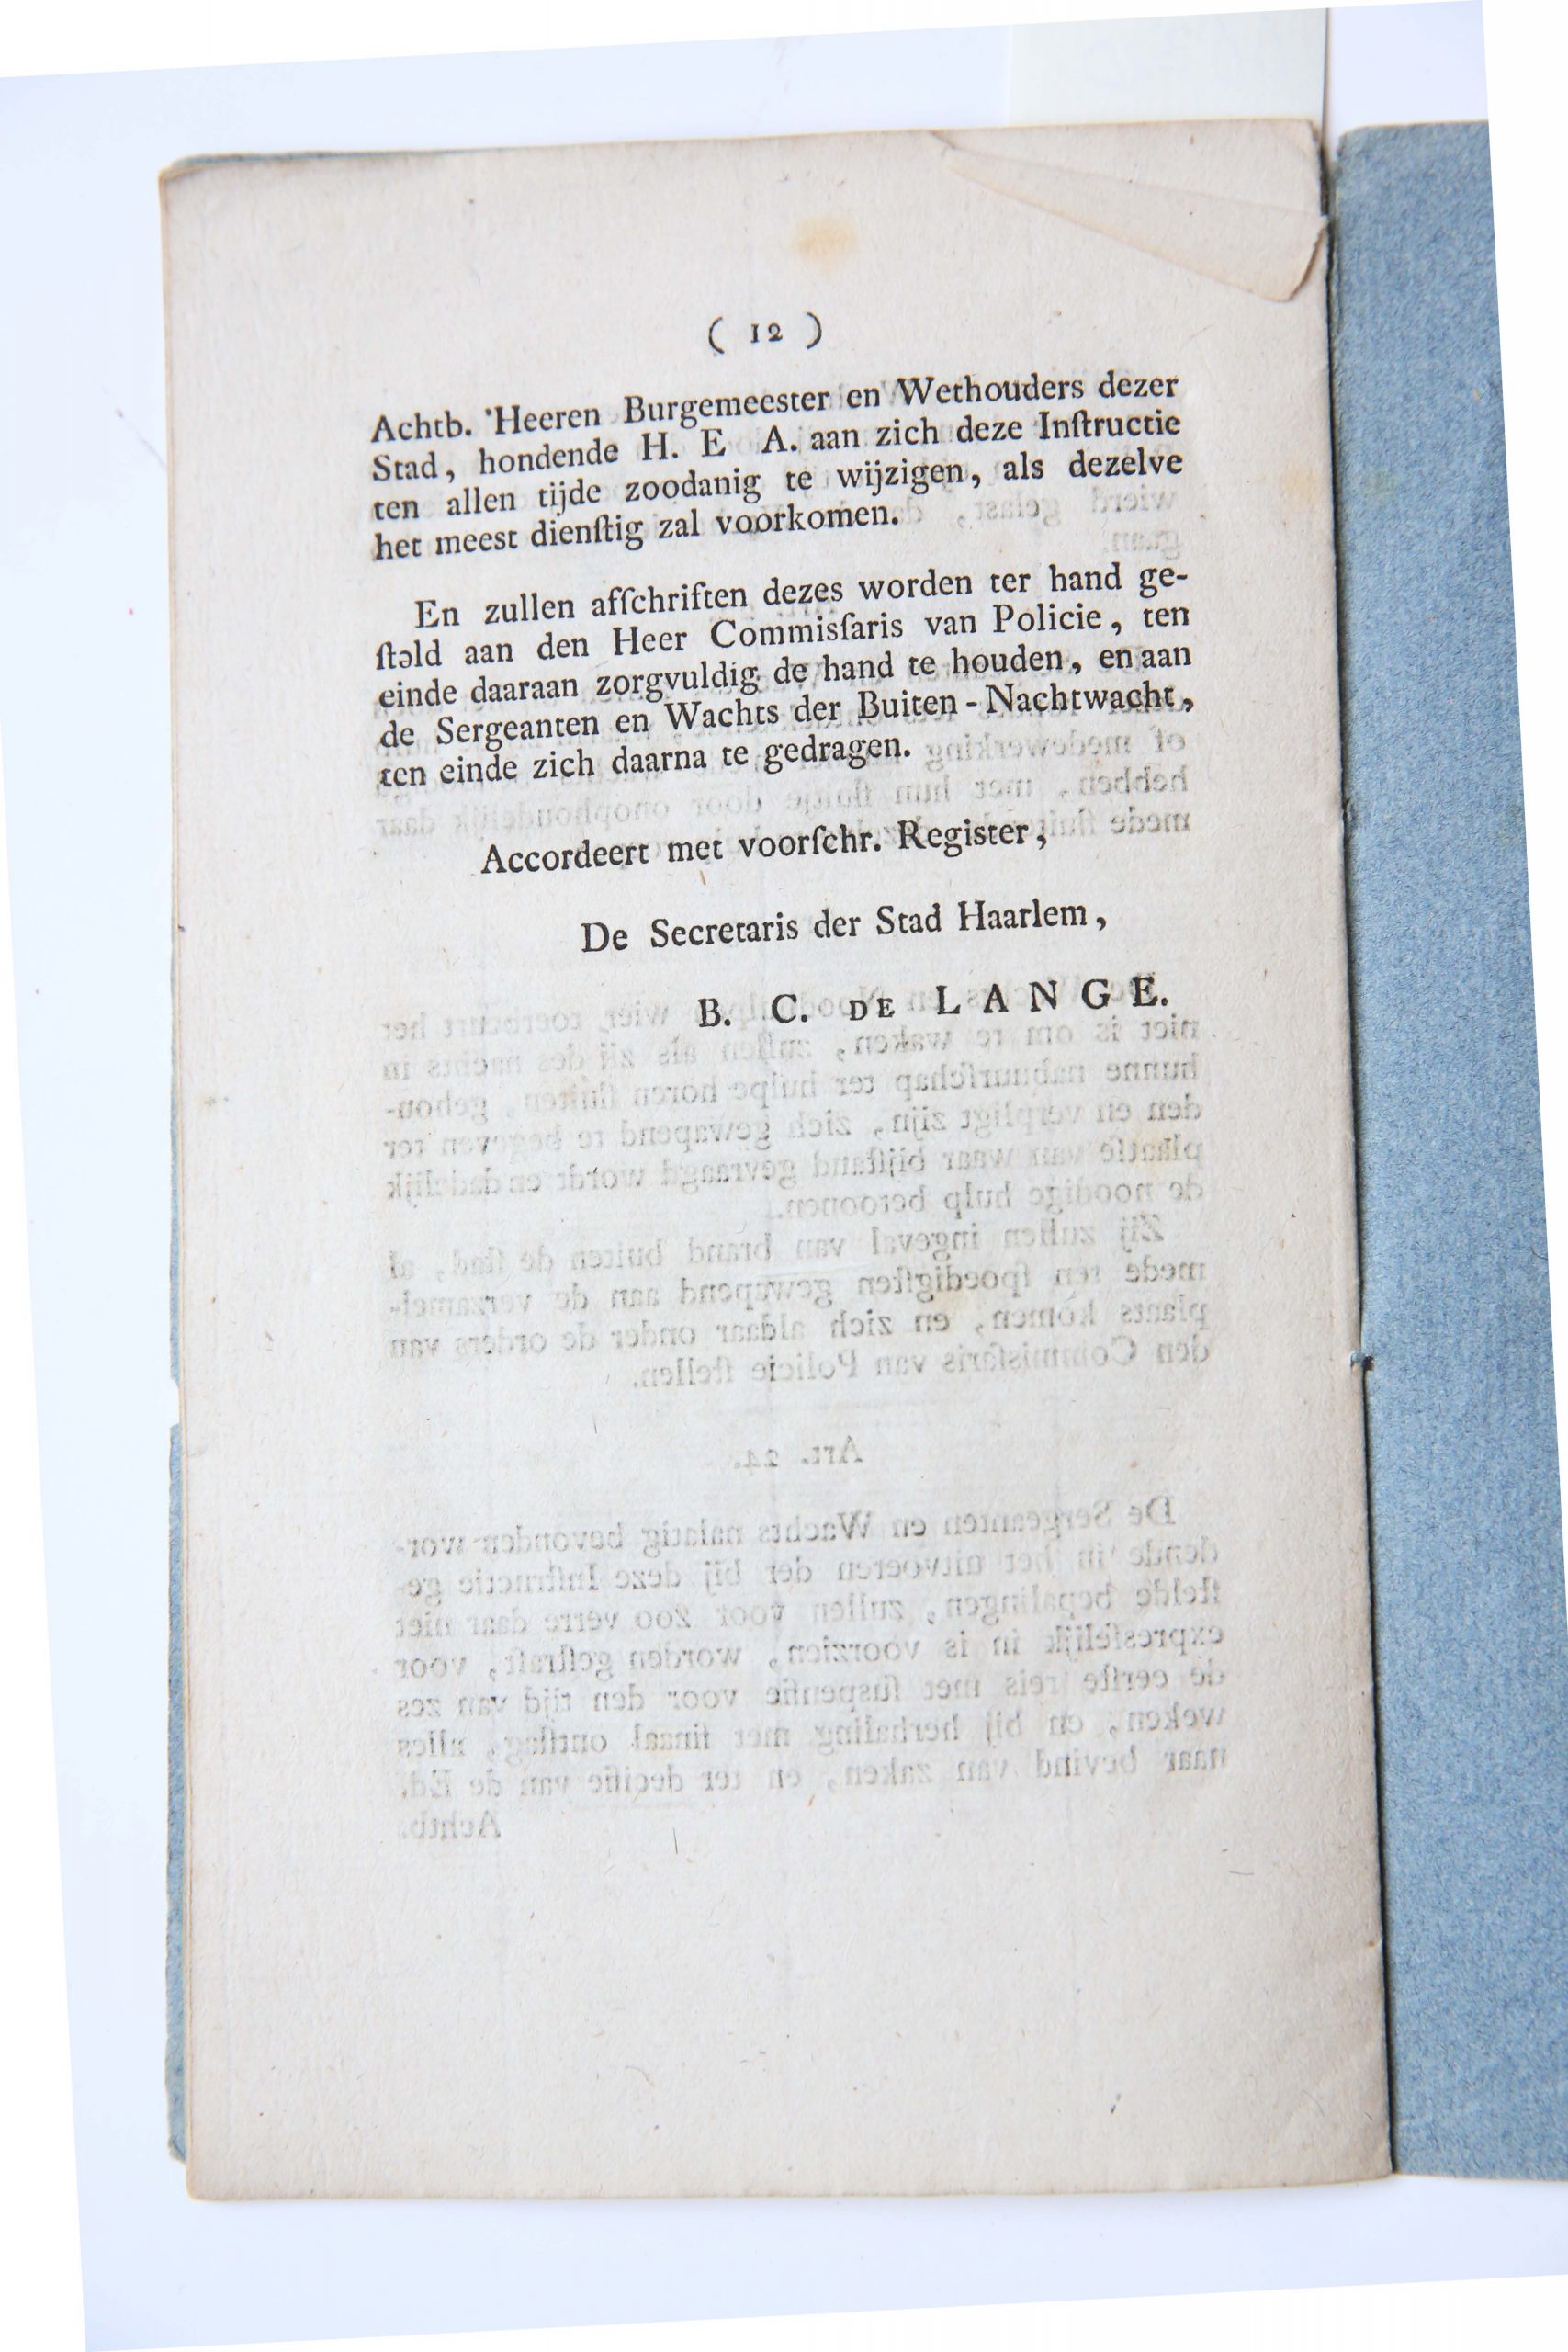 B.C. de Lange, Instructie voor de Nachtwachts in de buitenkwartieren der Stad Haarlem, Te Haarlem bij Johannes Enschedé en zonen, Stads-drukkers, [1825], 12 pp.